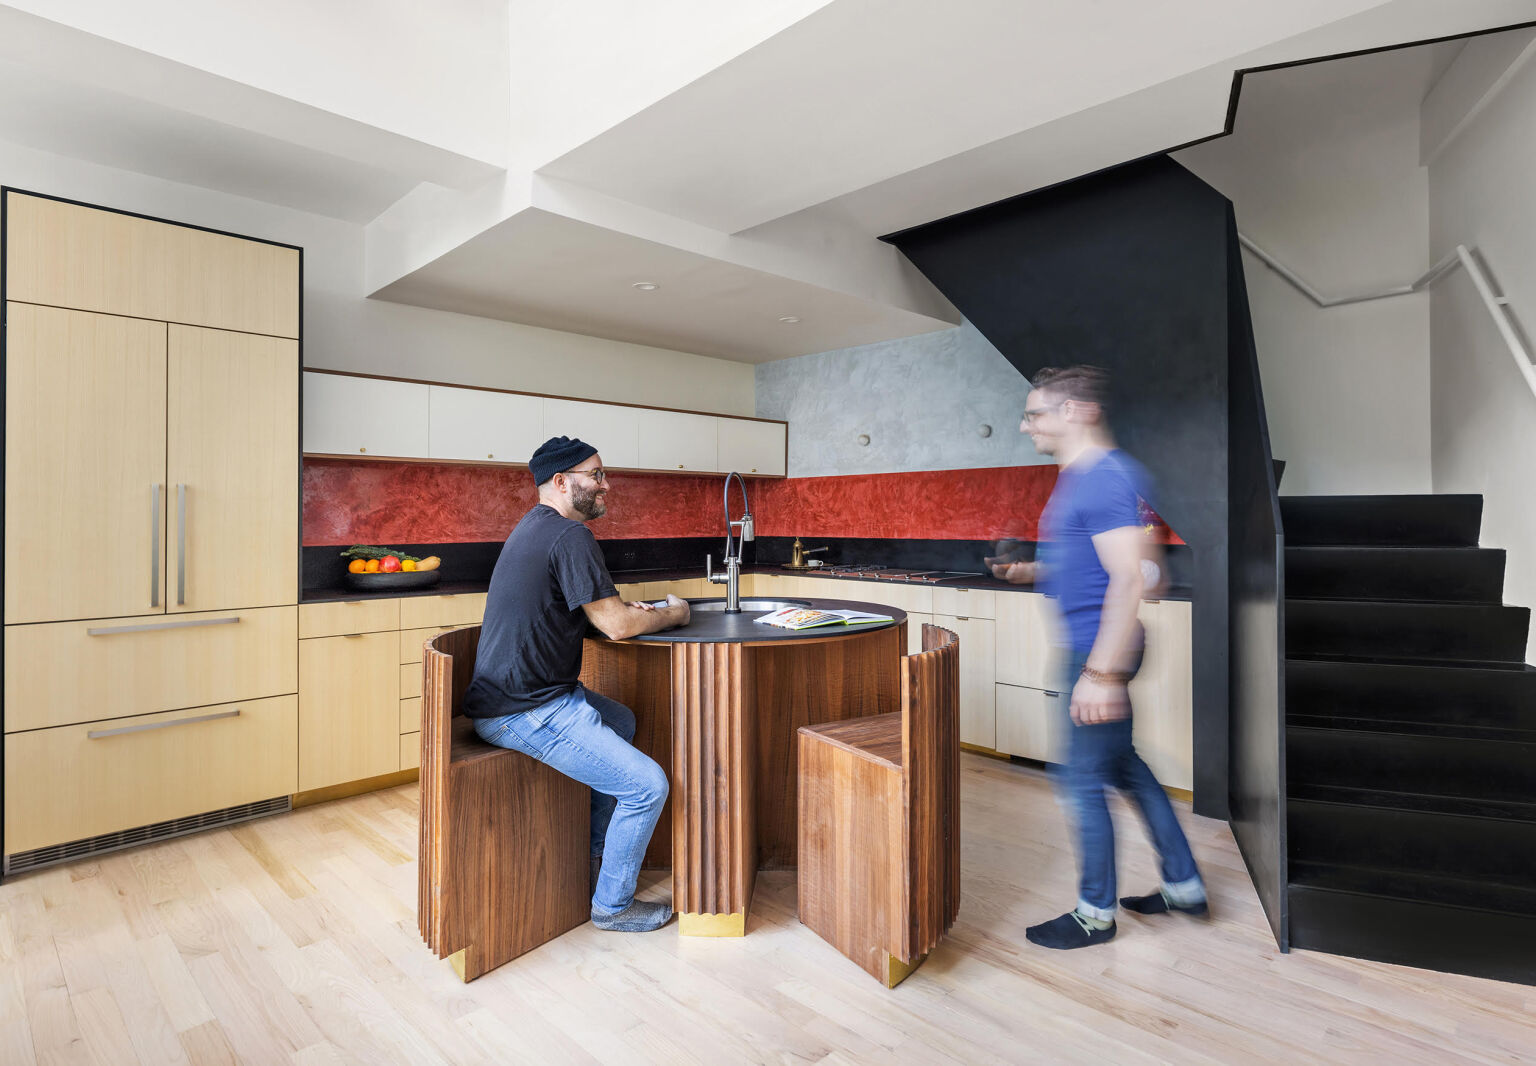 cubist kitchen inworkshop idan naor brooklyn new 2  